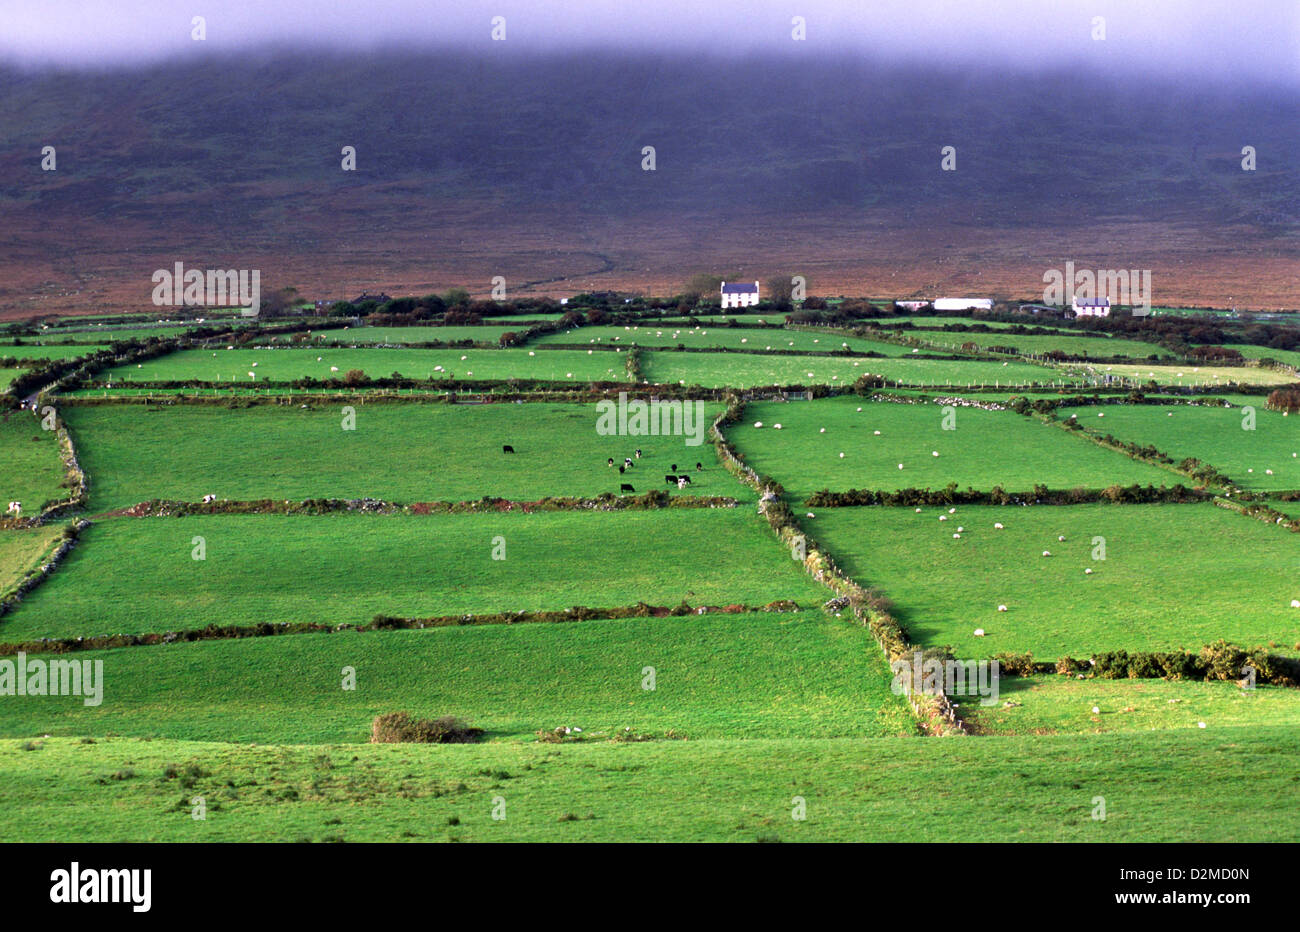 Farmland with dry-stone wall enclosures on Dingle Peninsula, County Kerry, Ireland. Stock Photo